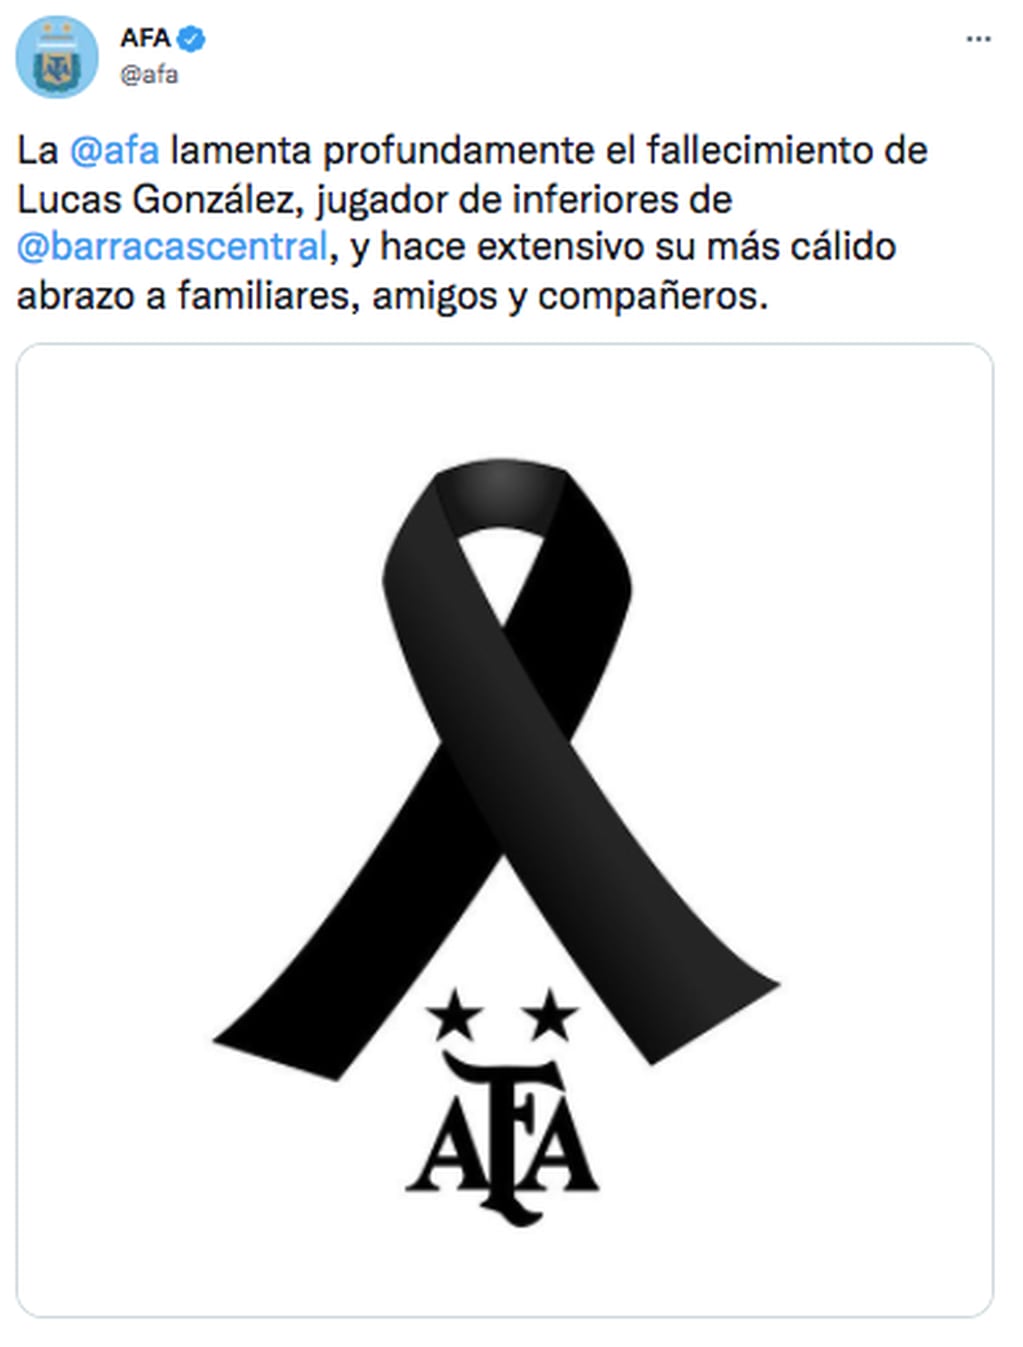 El mensaje de la AFA en apoyo a la familia de Lucas González.